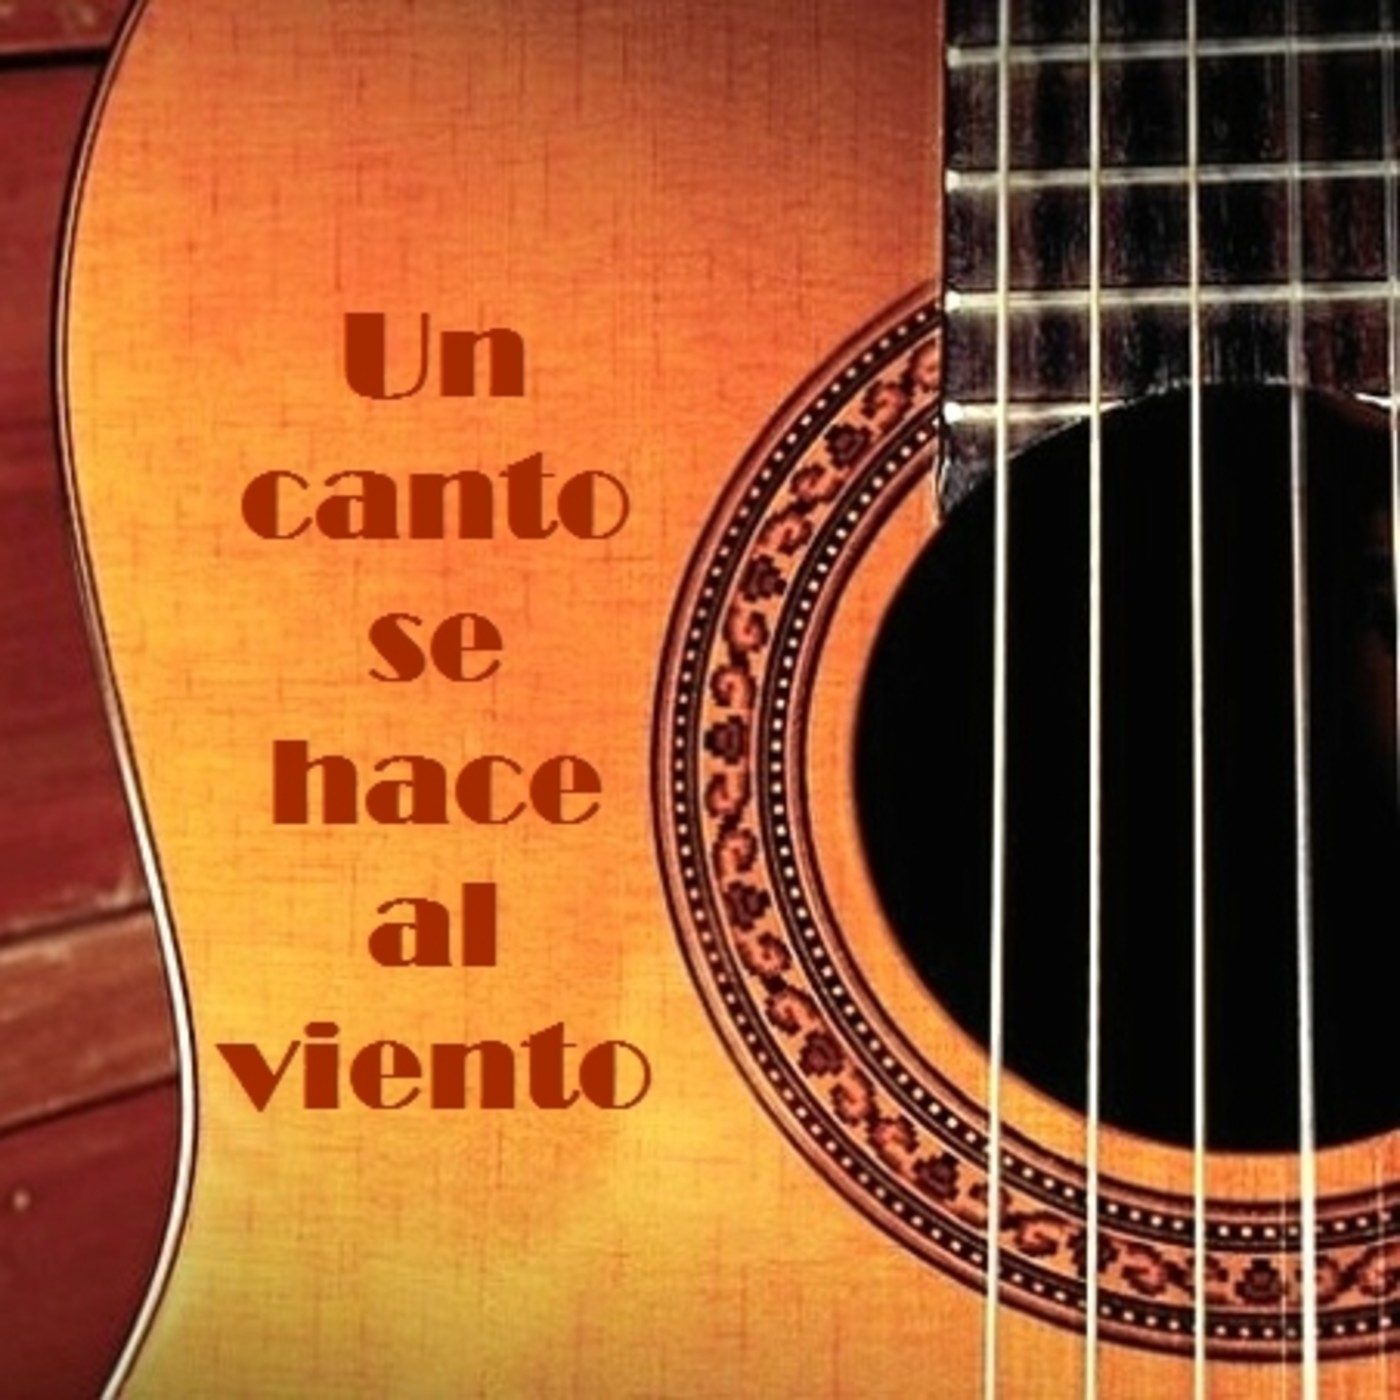 Un Canto Se Hace Al Viento, entrevista con Carlos Guerrero, sobre "Música maestrx”, 50 años de CTERA